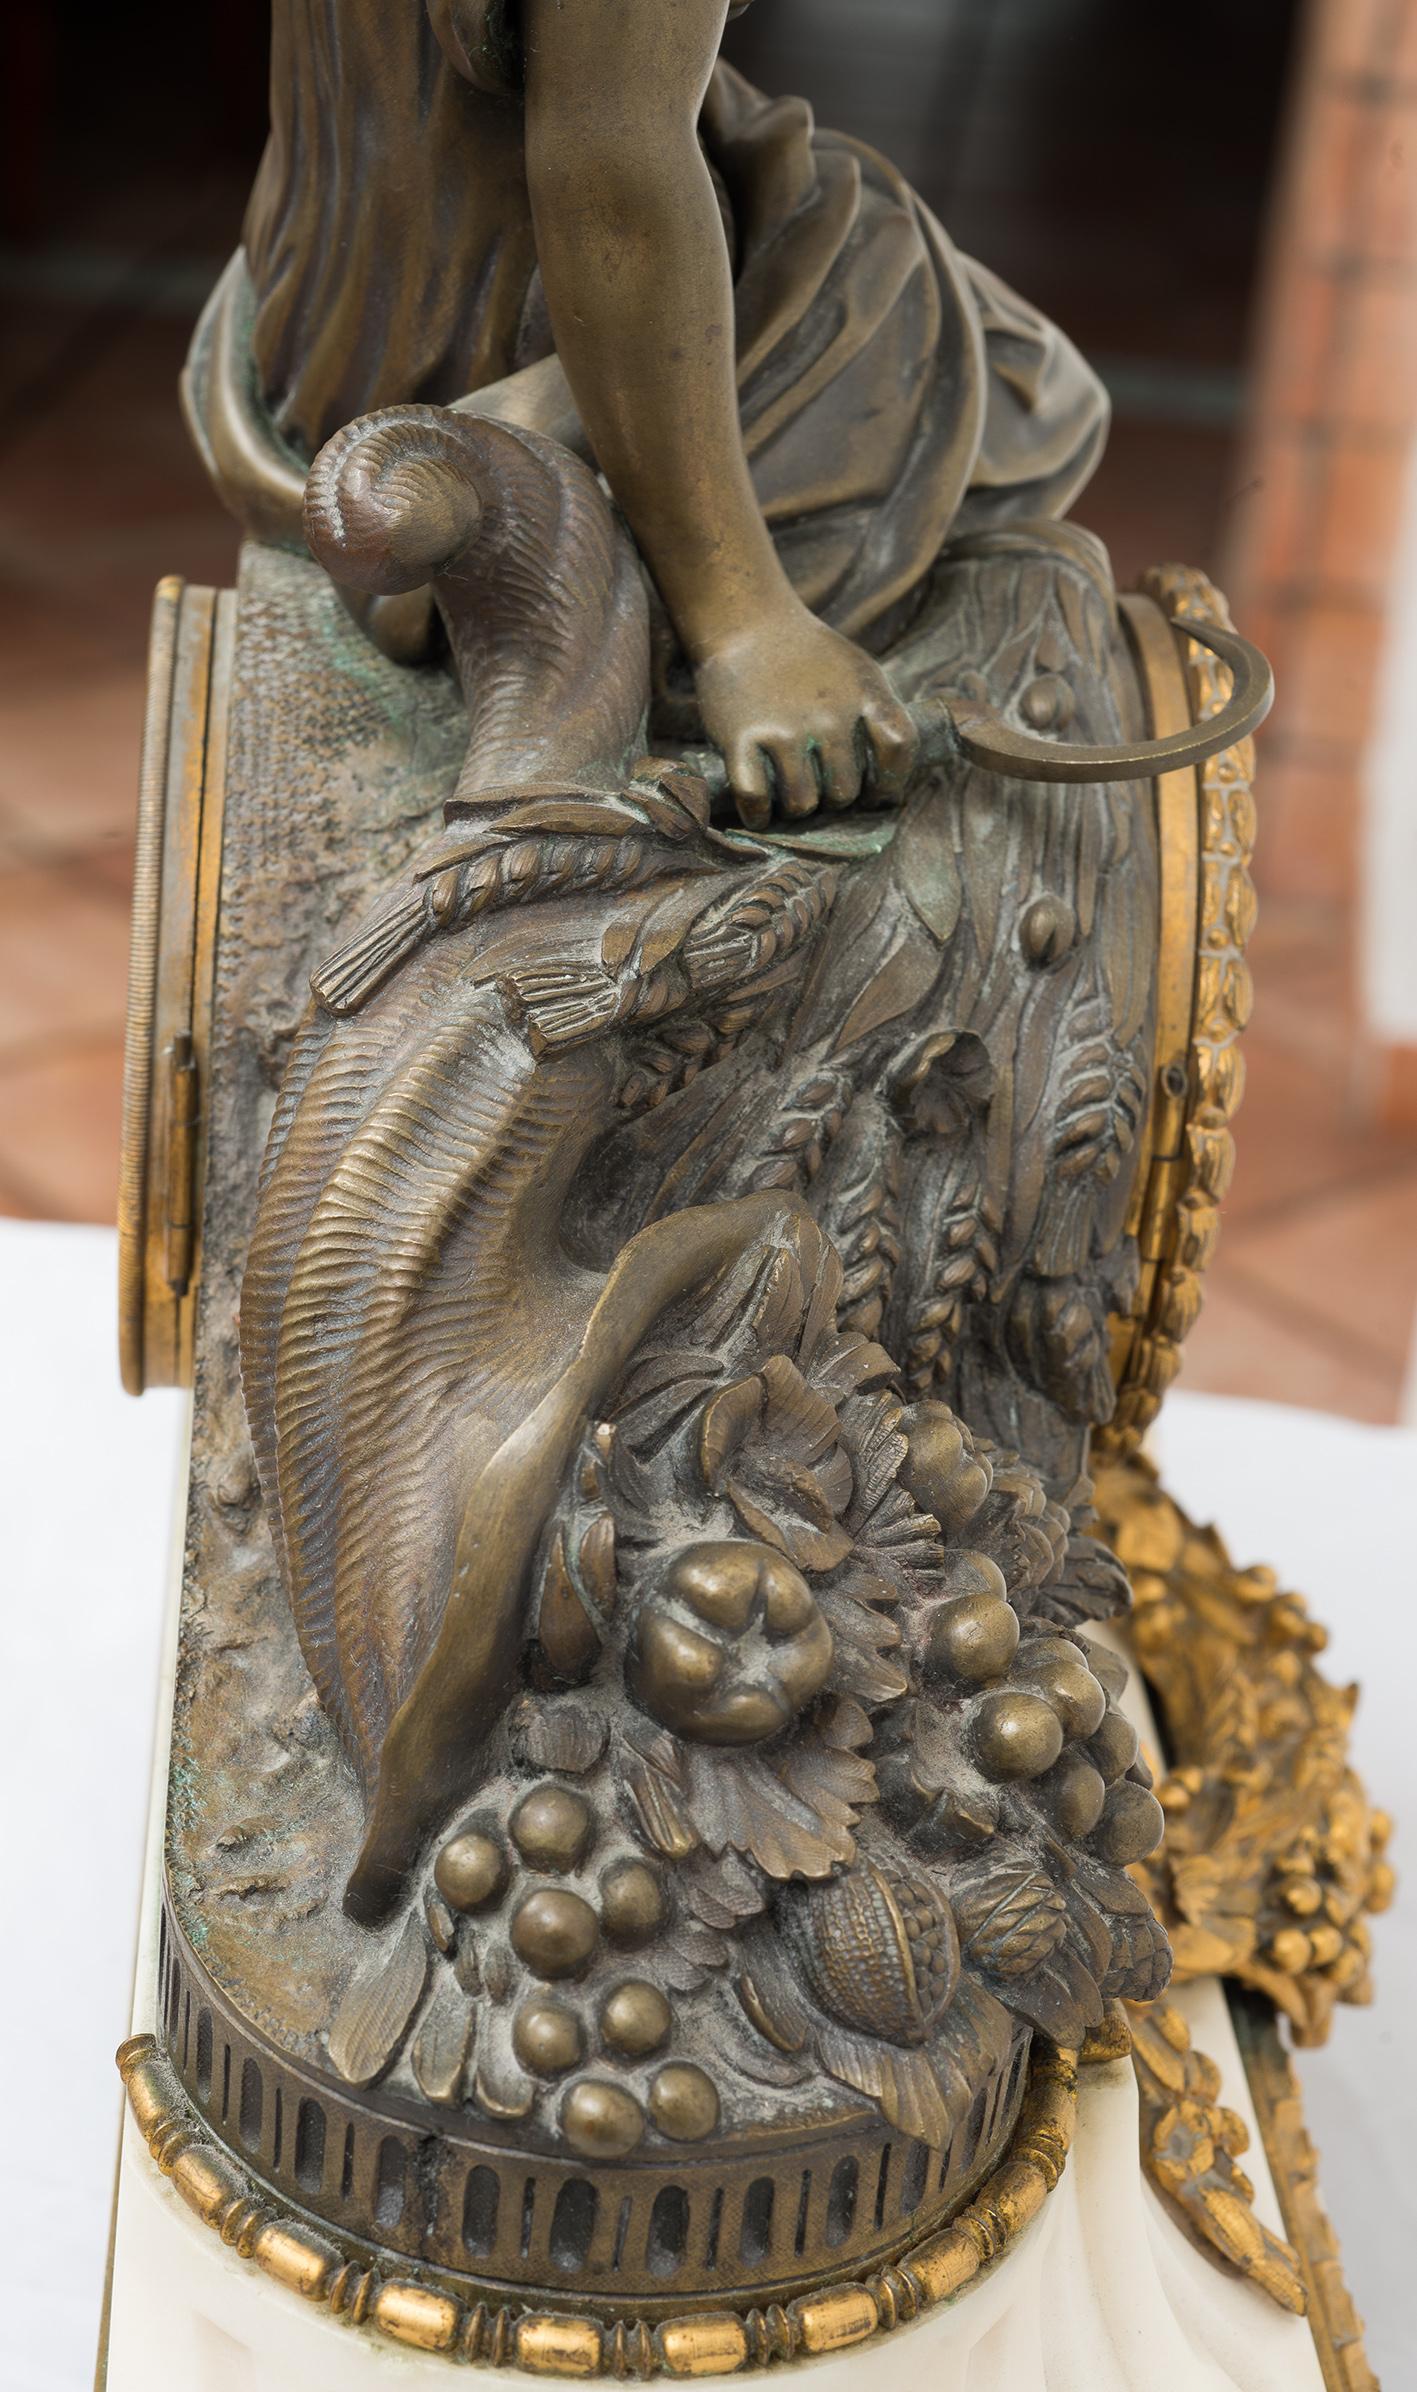 Orologio Napoleone III Francese in bronzo dorato e bronzo patinato appartenente alla seconda metà del XIX secolo.

La base in marmo bianco statuario è adornata con delle applicazioni in bronzo dorato a motivo floreale e poggia su piedi circolari